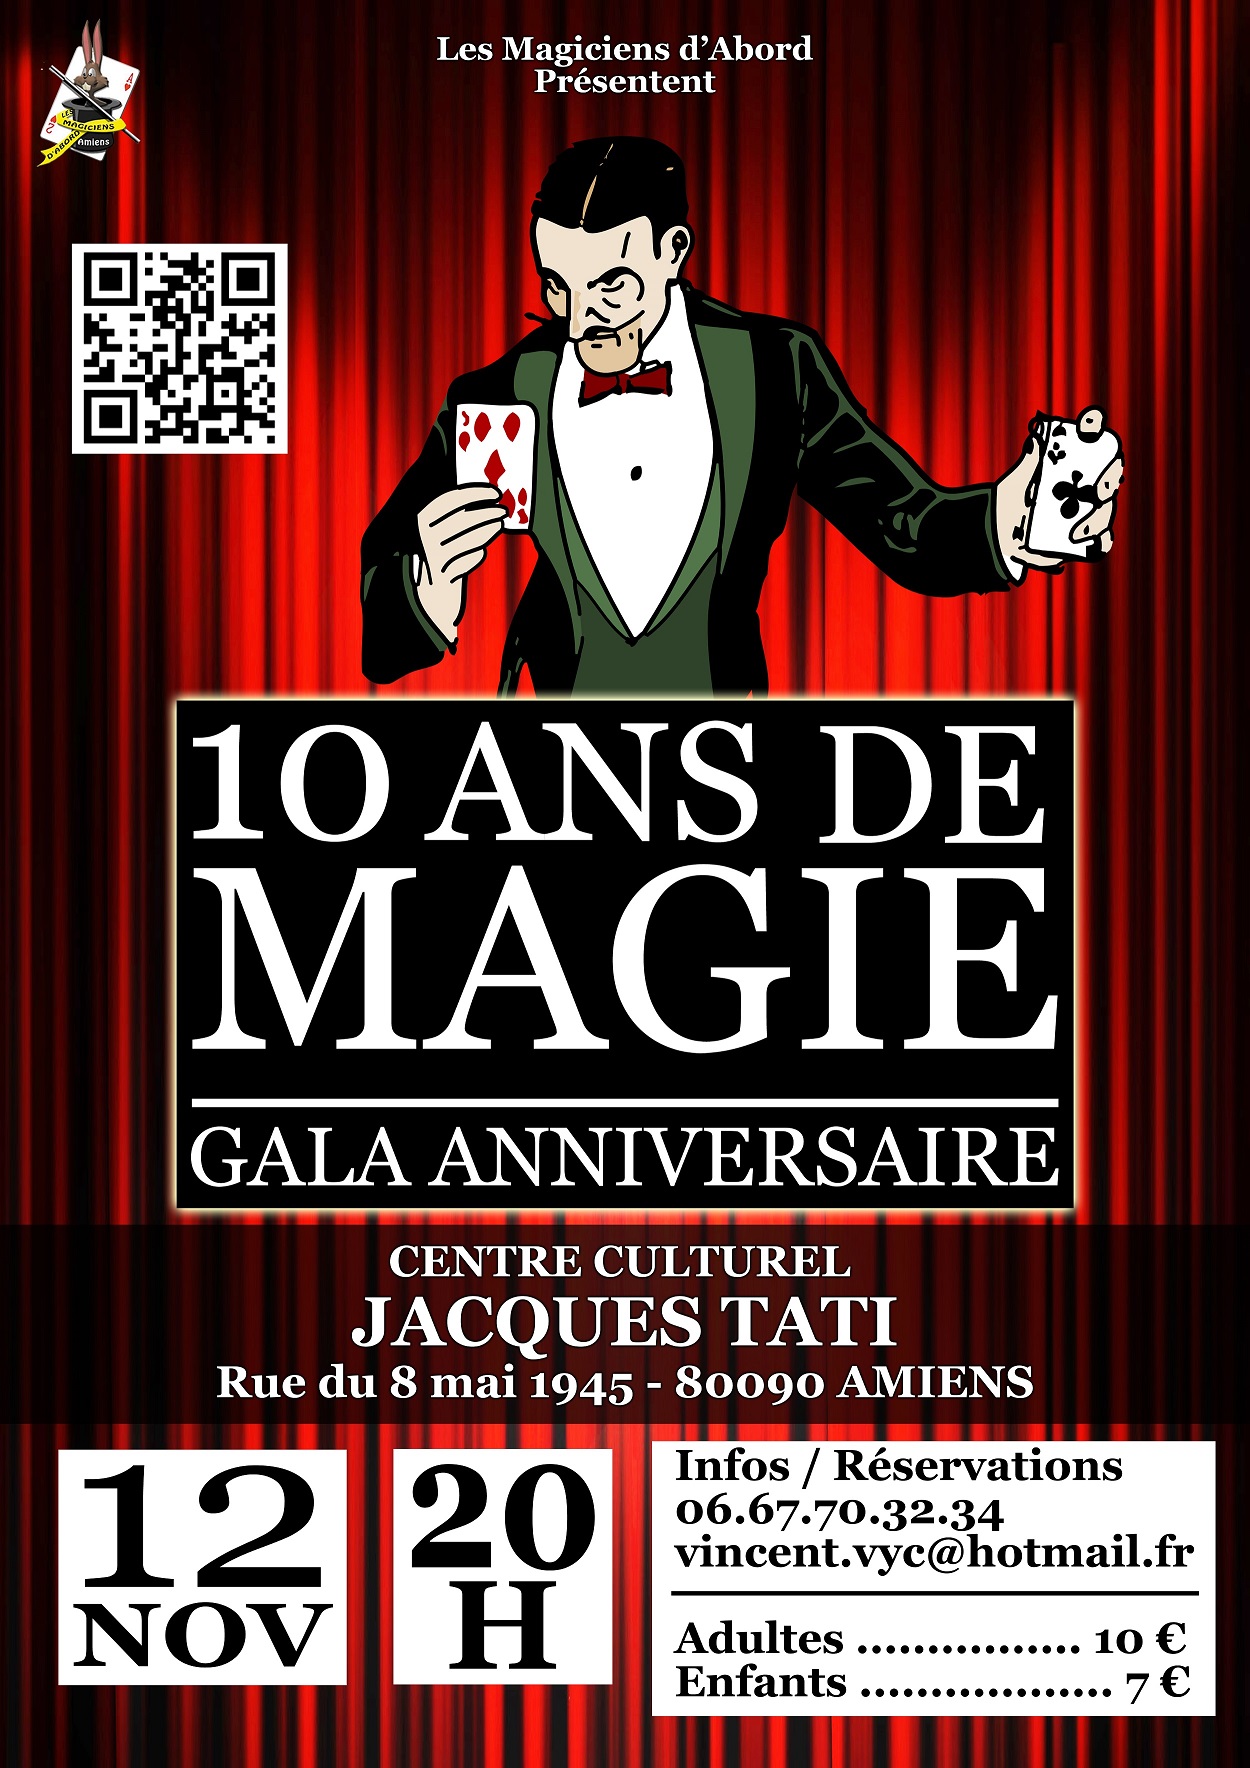 10 ans de magie - Gala anniversaire - Centre Culturel Jacques Tati